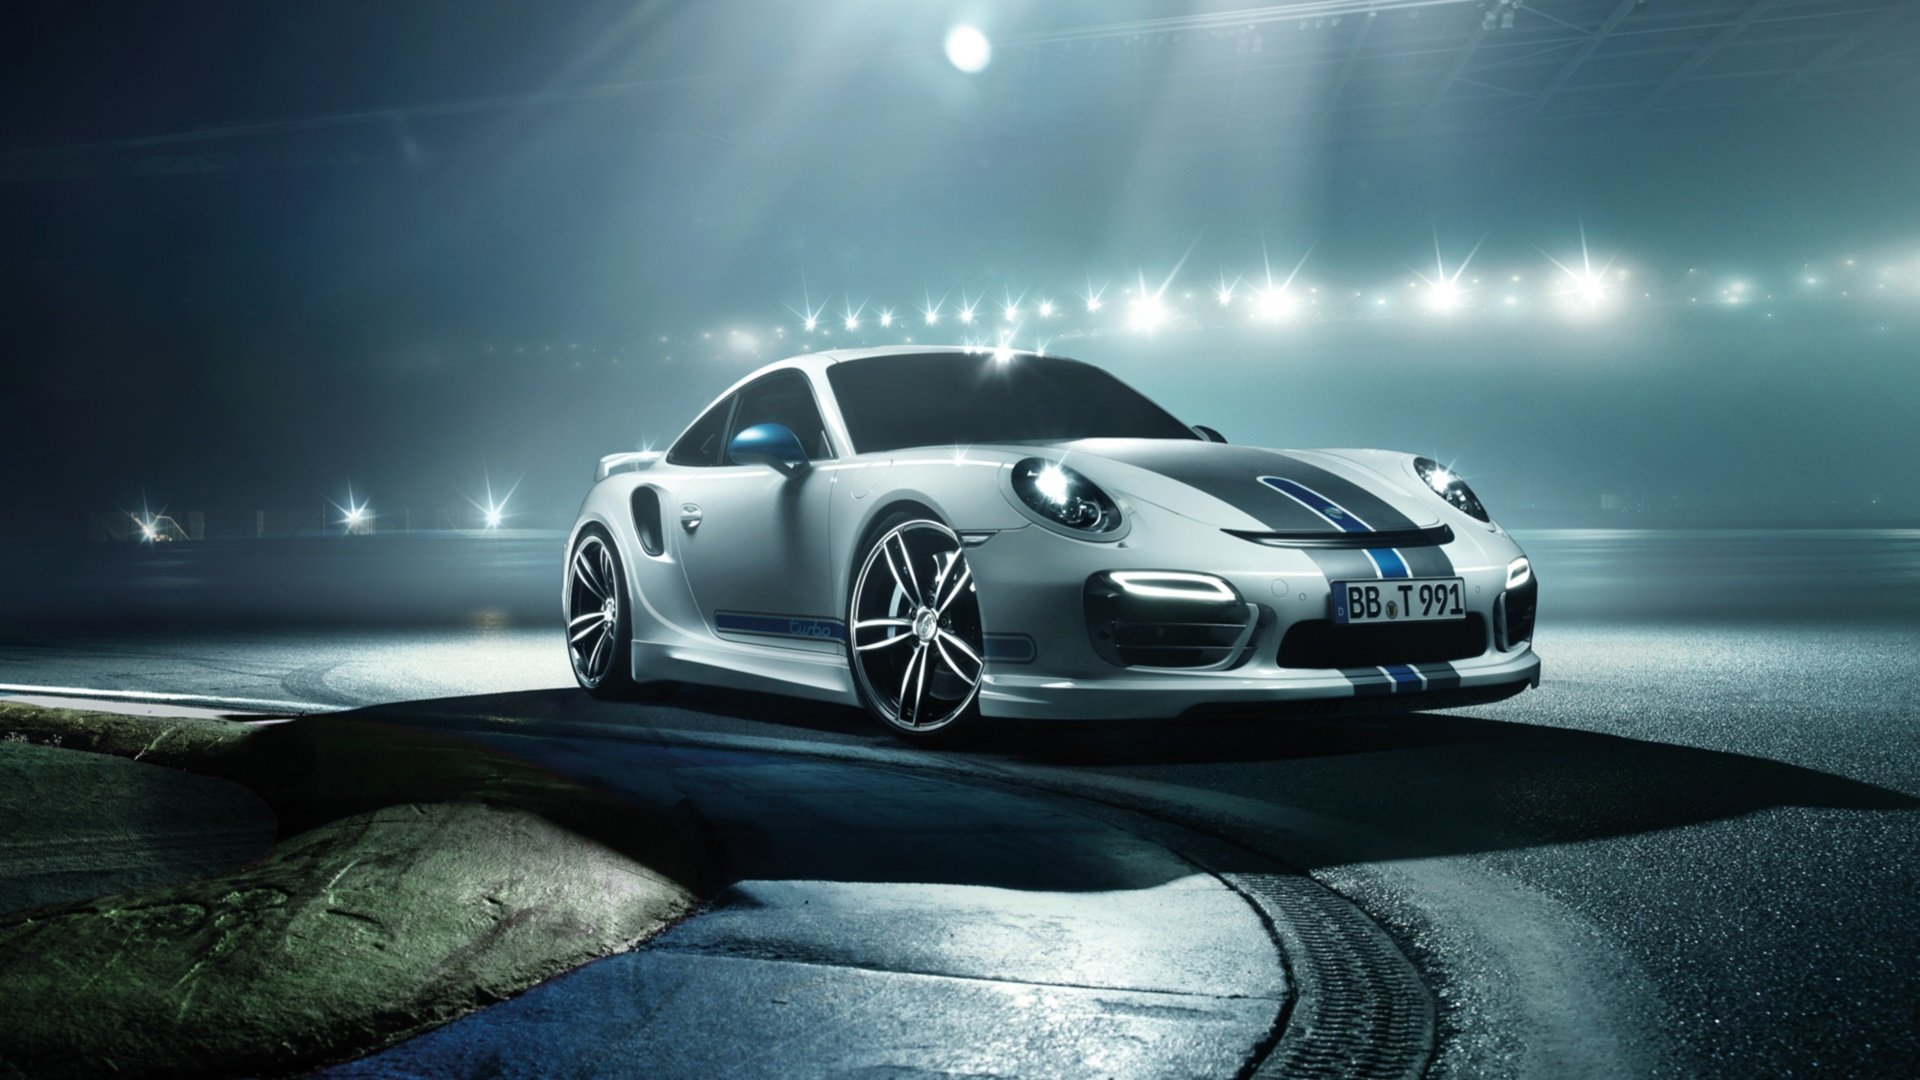 High resolution Porsche 911 Turbo hd 1920x1080 wallpaper ID:281185 for desktop